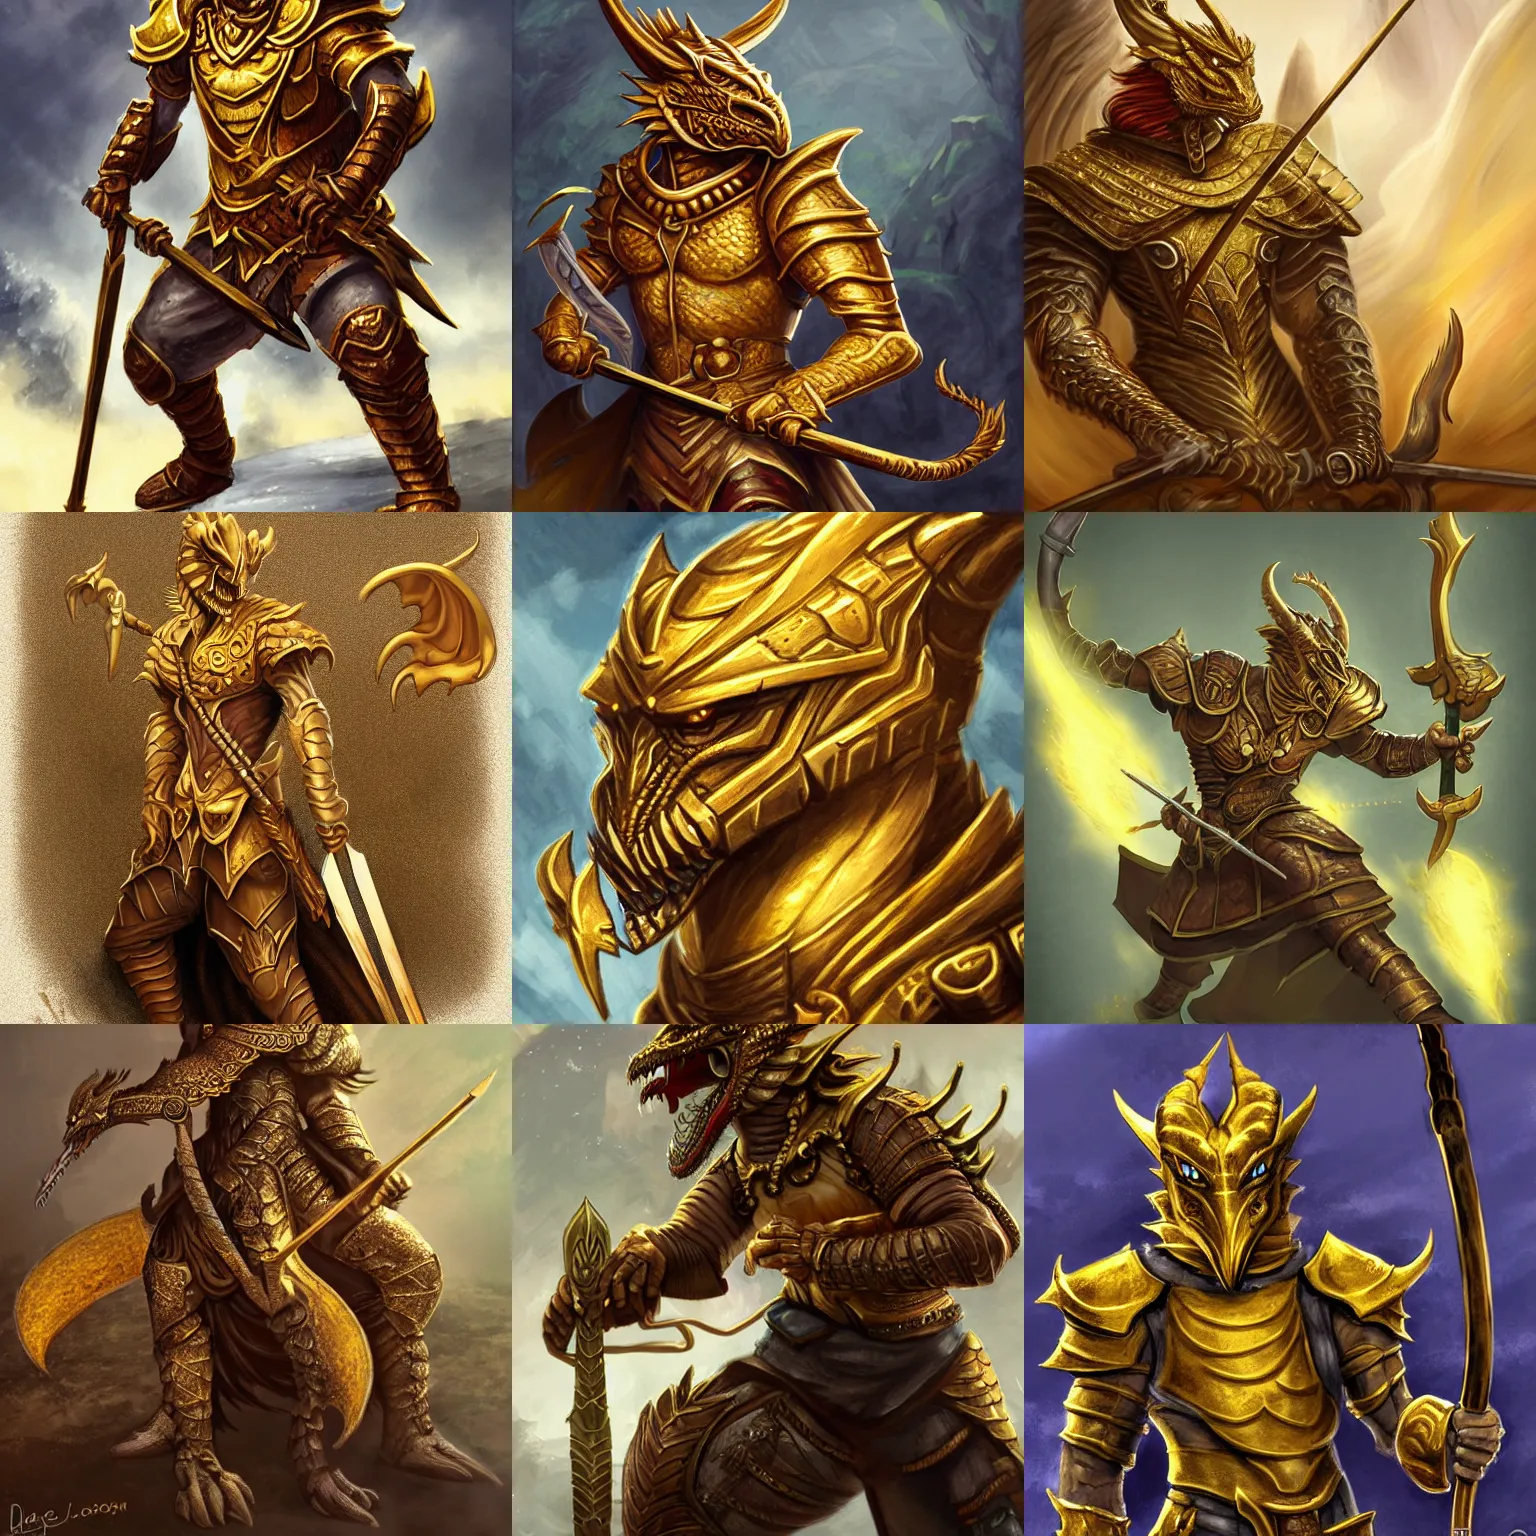 Prompt: Golden Dragonborn wielding a spear, character art, Portrait, D&D, high detail